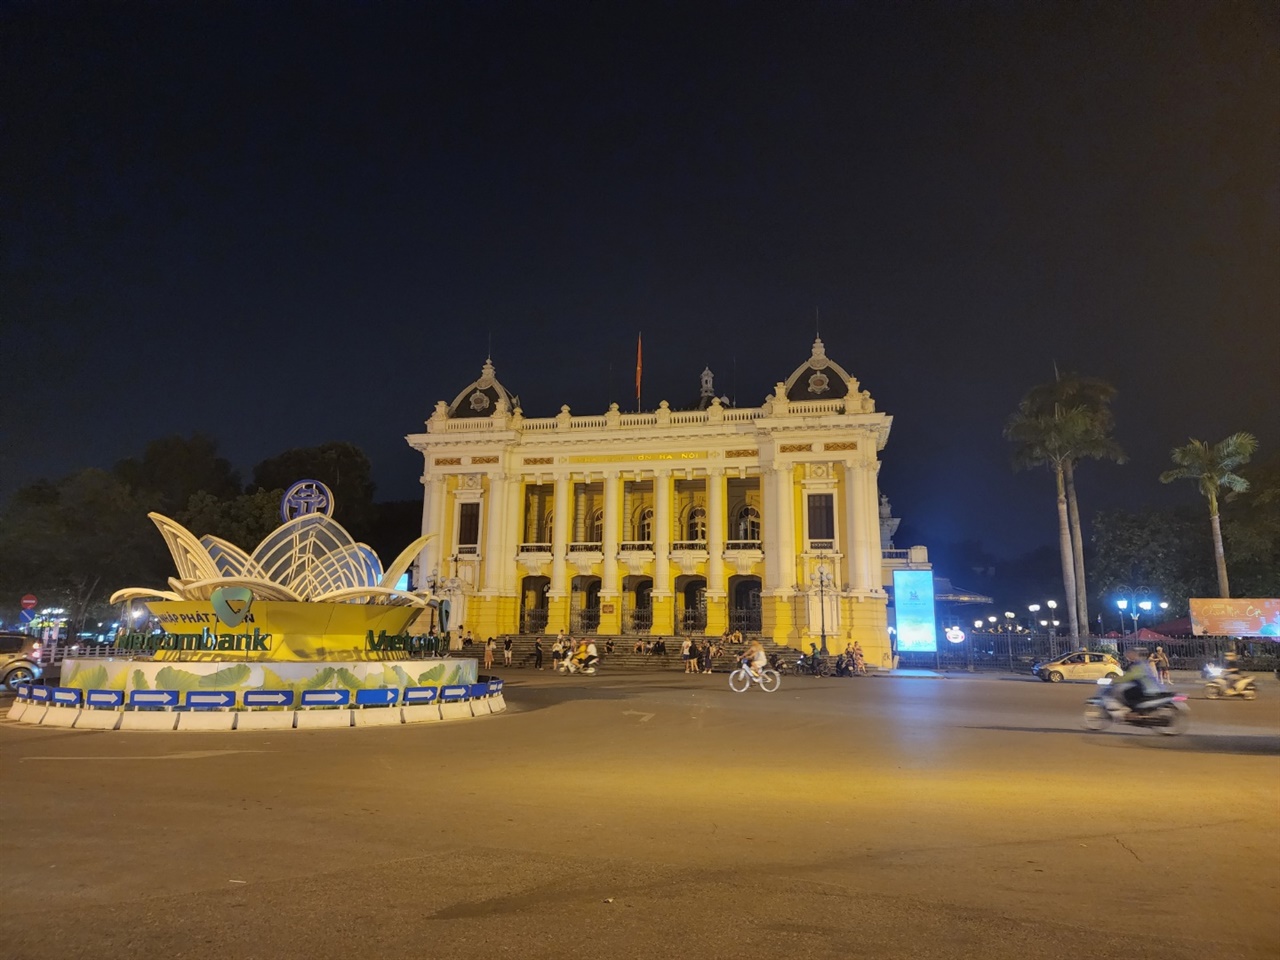 프랑스는 베트남을 식민지화 한 이후 그들의 흔적을 도시 곳곳에 세겨놓았다. 하노이 역시 프렌치쿼터를 중심으로 프랑스의 자취가 남아있다. 대표적으로 오페라하우스가 그 중 하나다.